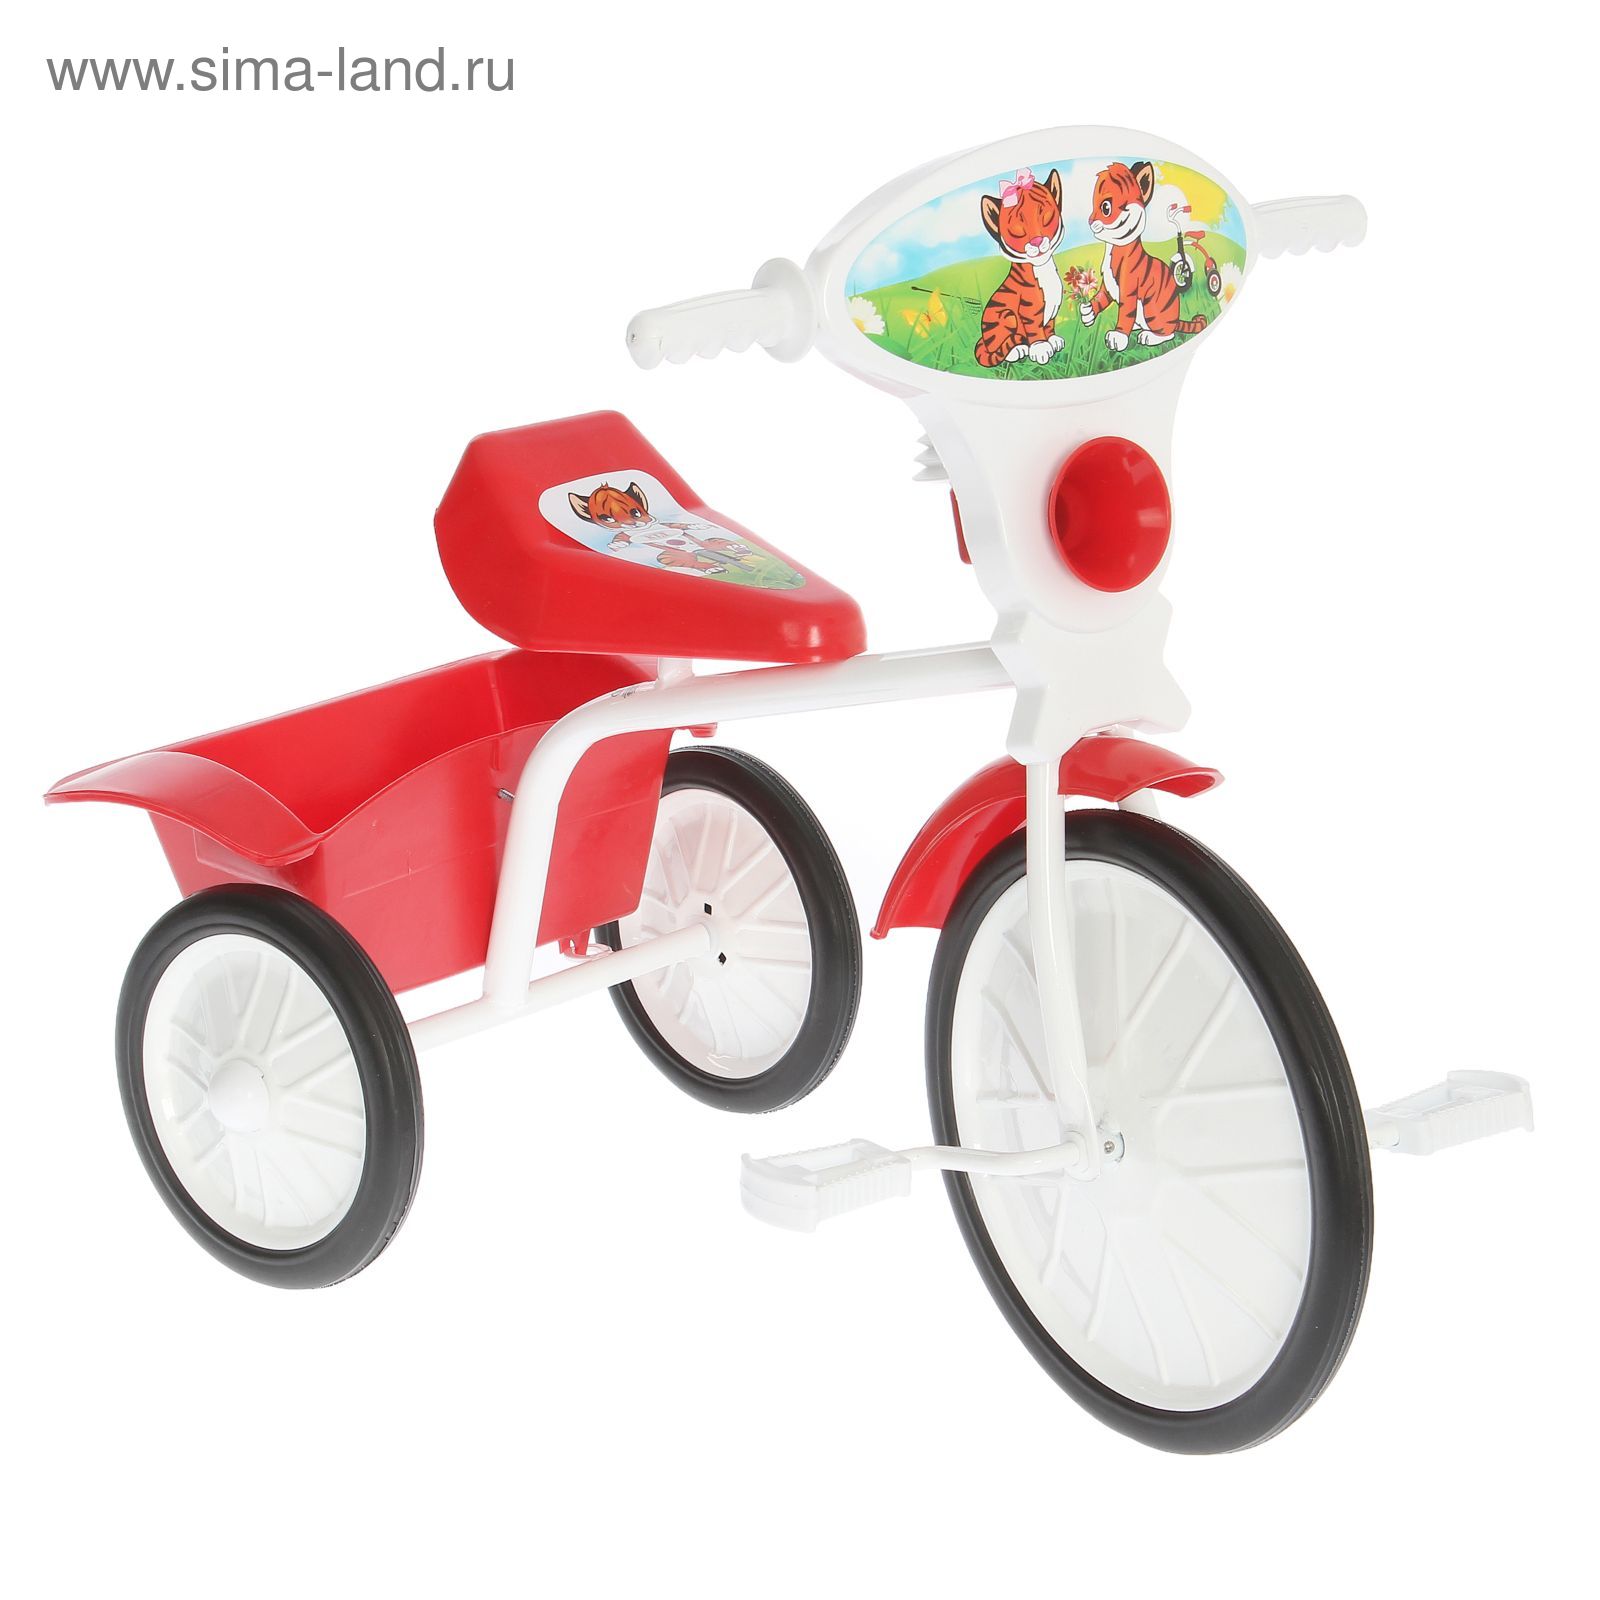 Велосипед трехколесный  "Малыш"  05, цвет красный, фасовка: 2шт.